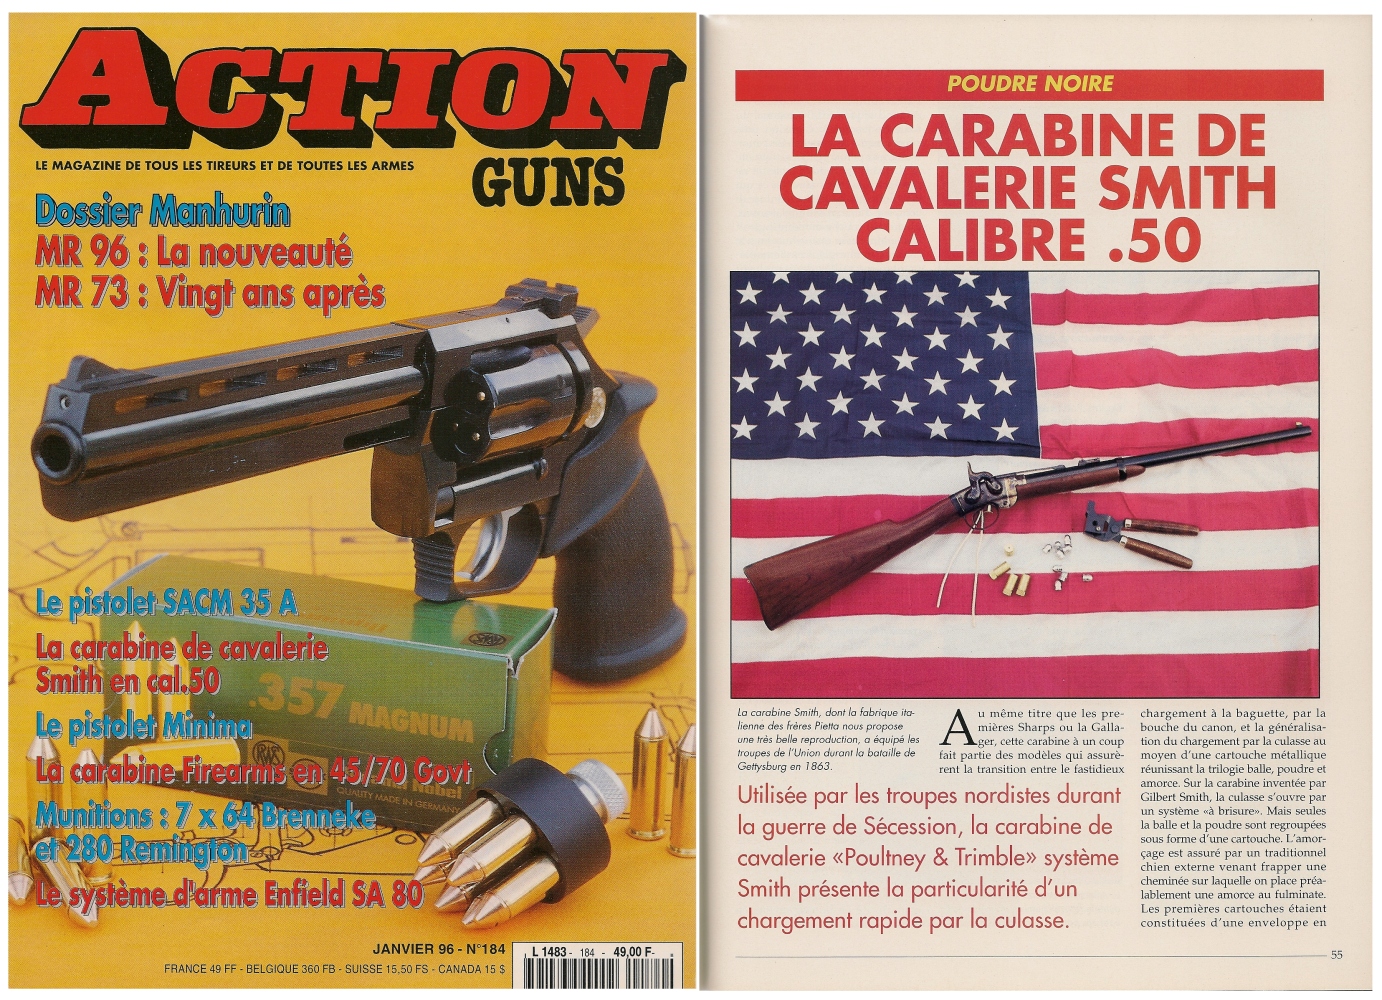 Le banc d’essai de la réplique de carabine de cavalerie « Smith » a été publié sur 5 pages dans le magazine Action Guns n° 184 (janvier 1996).